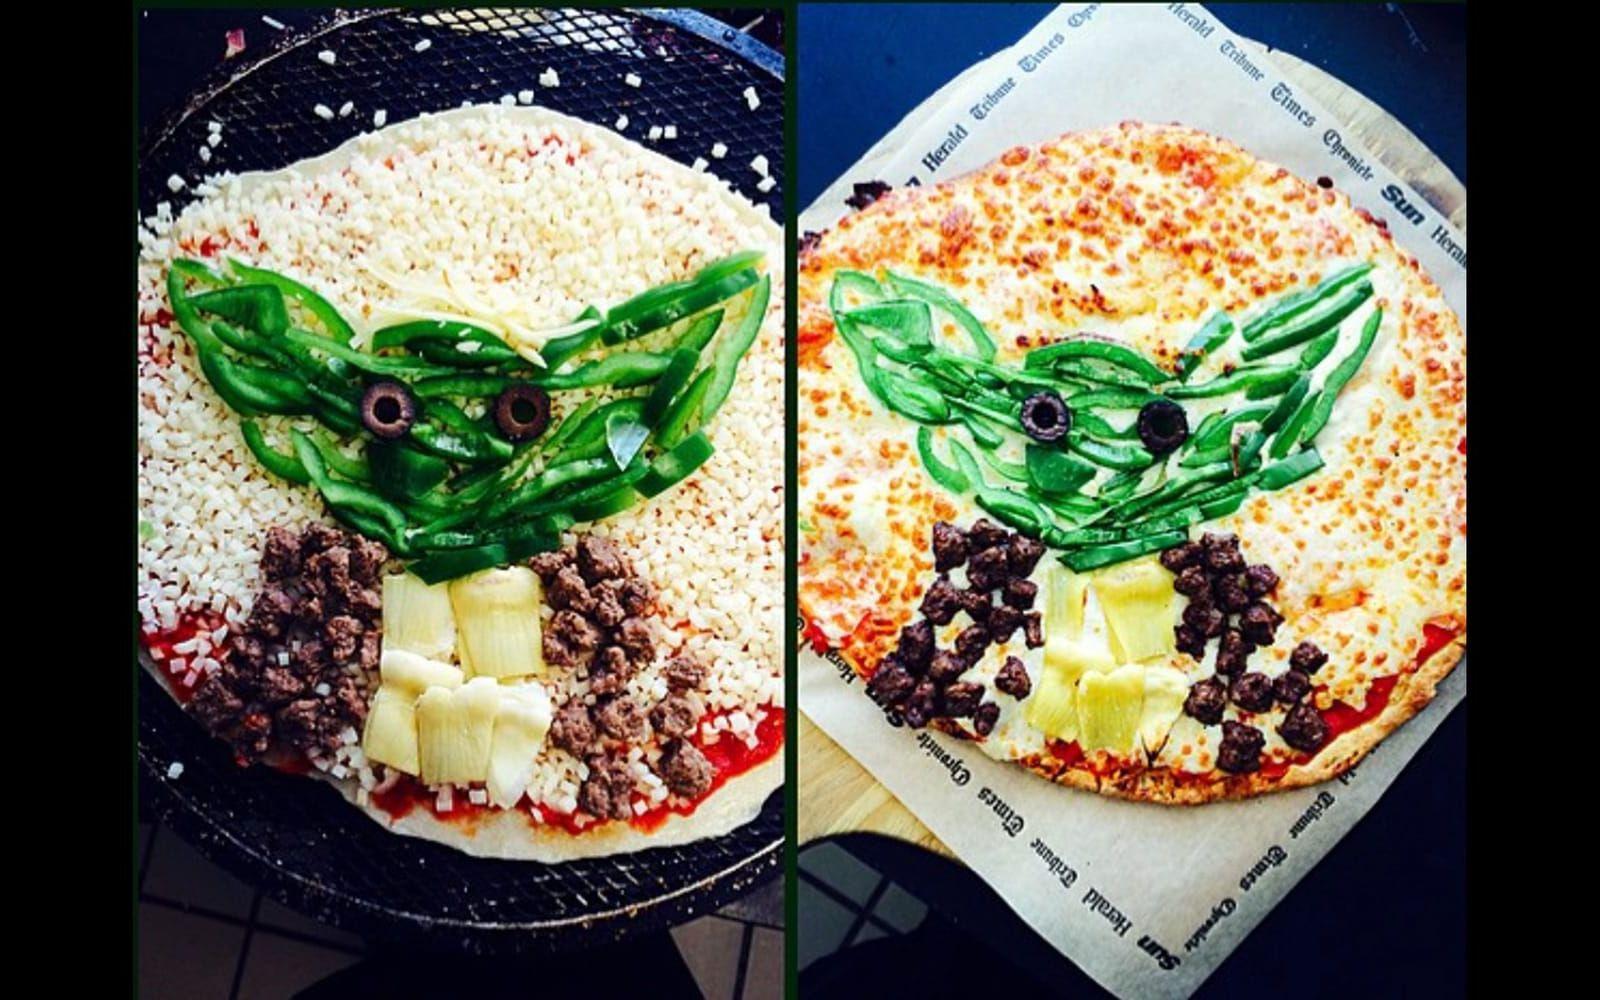 Baka en Star Wars-pizza i kväll. Självklart gör sig pizzaformen bäst för kreativa tolkningar av Dödsstjärnan. Eller som här – en vegetarisk Yoda-pizza!